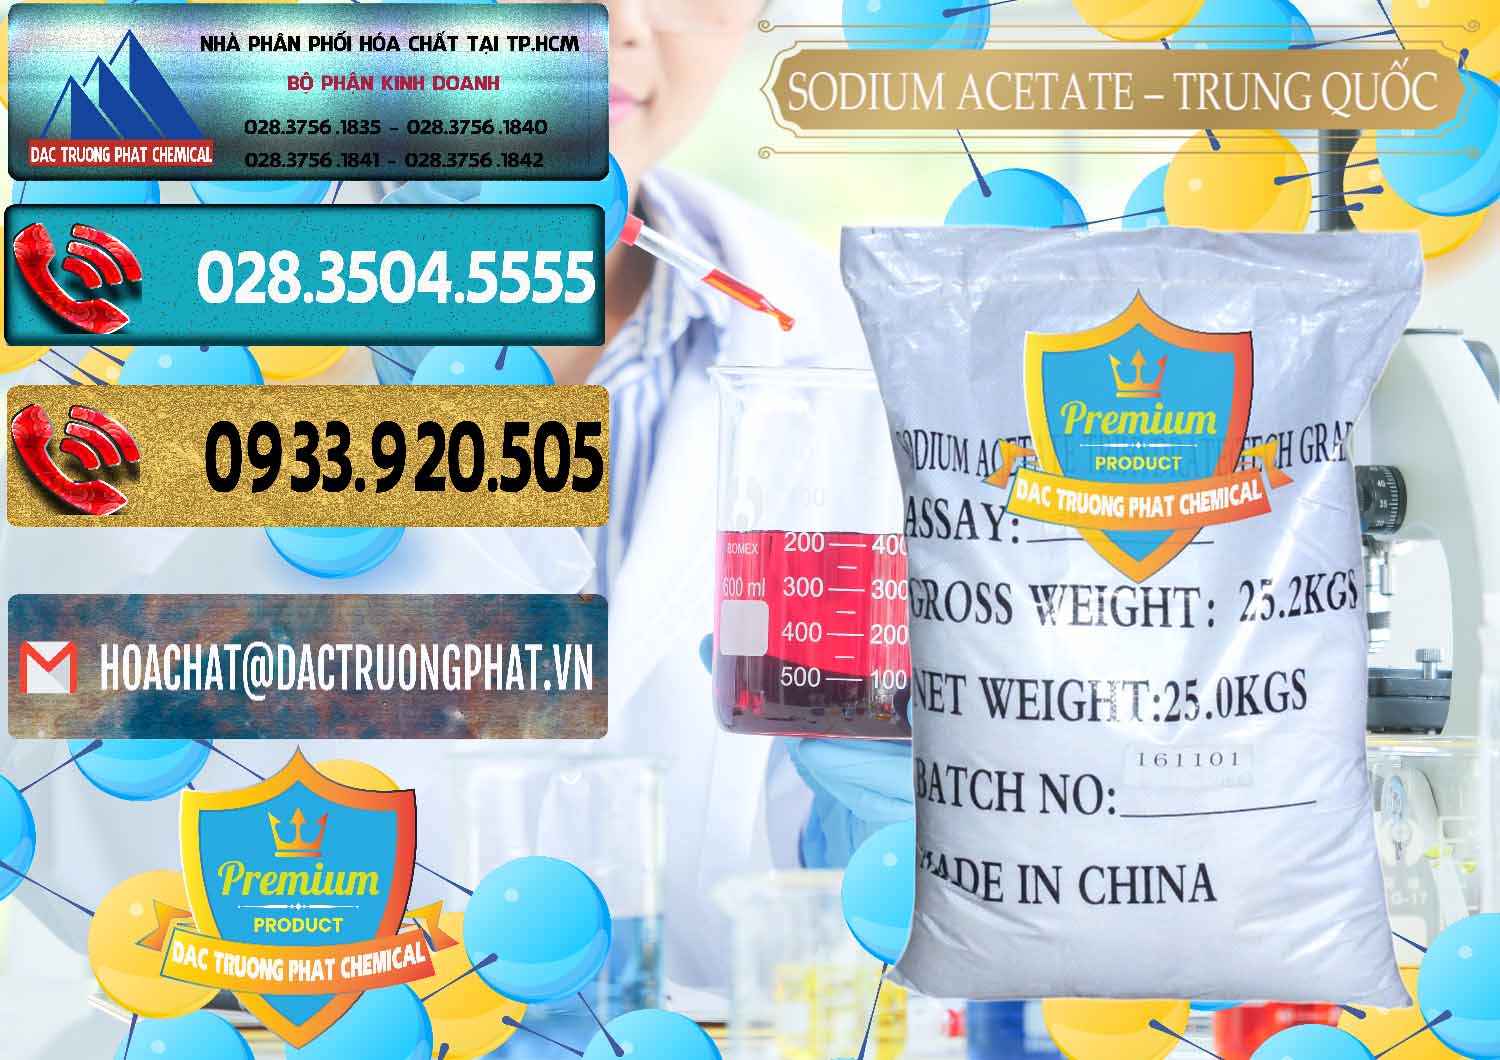 Nơi chuyên cung ứng & bán Sodium Acetate - Natri Acetate Trung Quốc China - 0134 - Đơn vị nhập khẩu và cung cấp hóa chất tại TP.HCM - hoachatdetnhuom.com